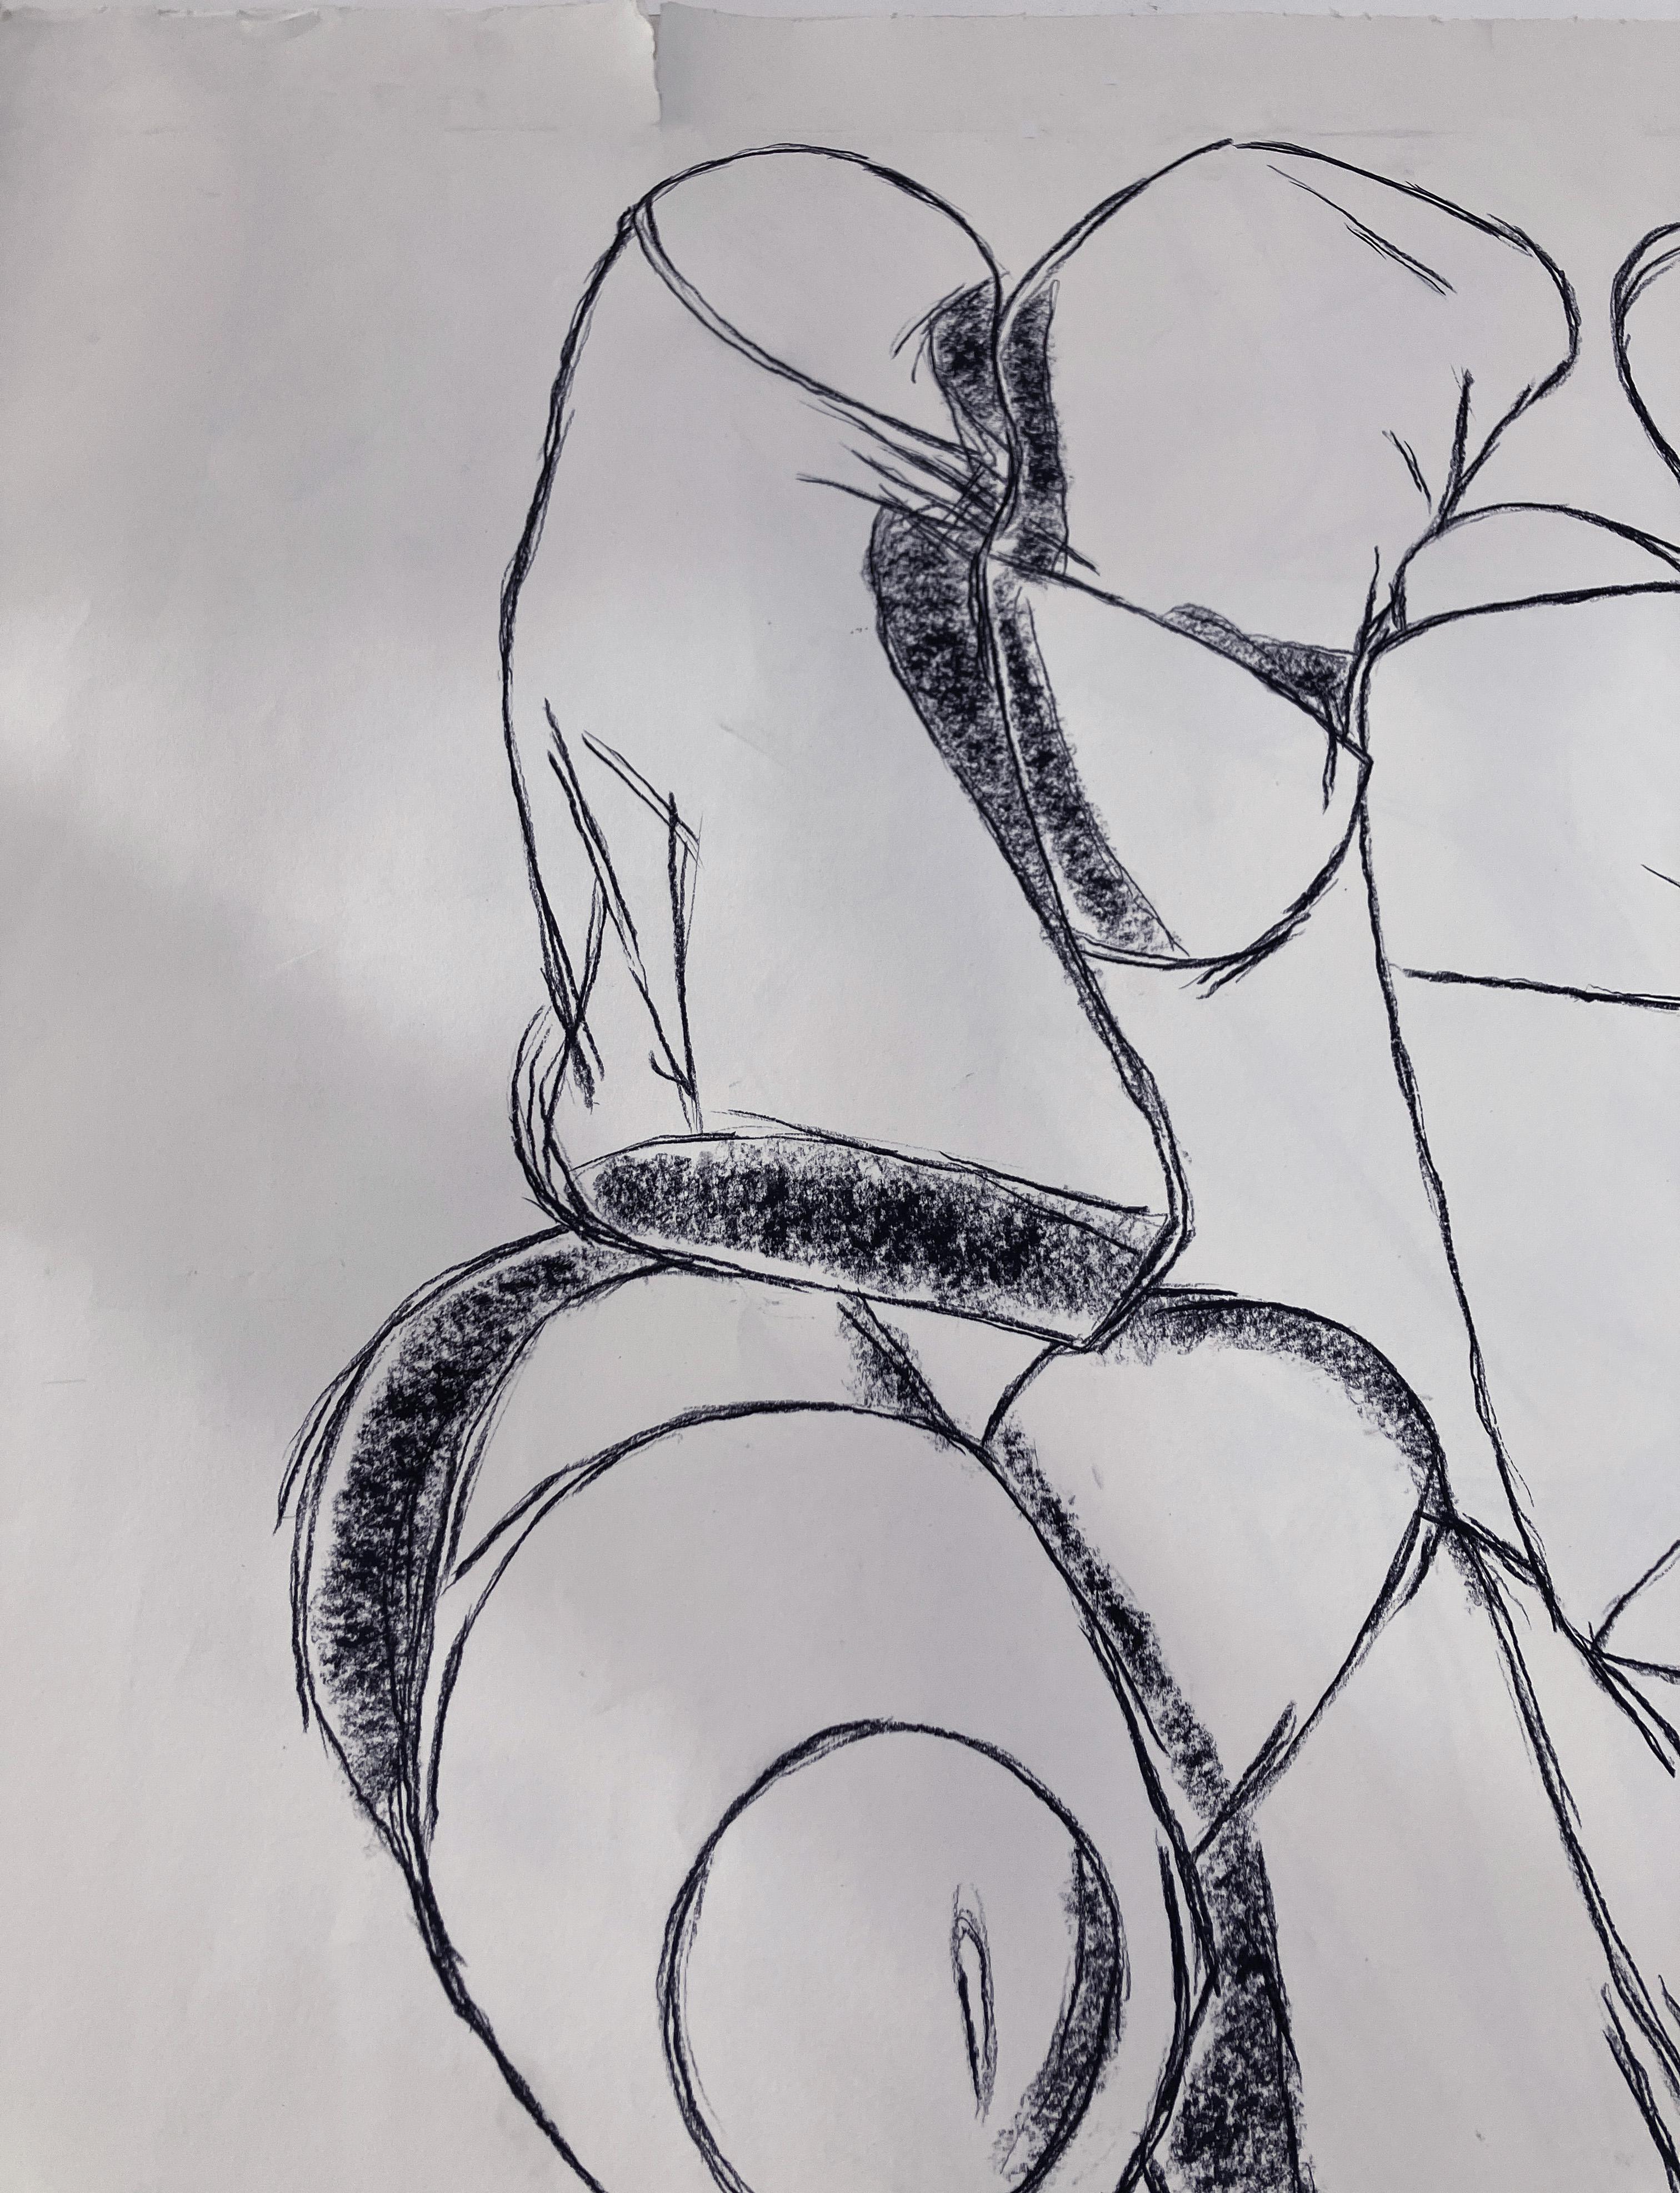 Ohne Titel - Penis von Celso Castro-Daza
Aquarellkreide auf Archivpapier
Bildgröße: 48 Zoll. H x 39,5 in. W 
Blattgröße: 59,5 Zoll. H x 44 in. W 
Einzigartig
1996

Das Zeichnen auf Papier ist sein wichtigstes Arbeitsmittel,  einige sind Skizzen